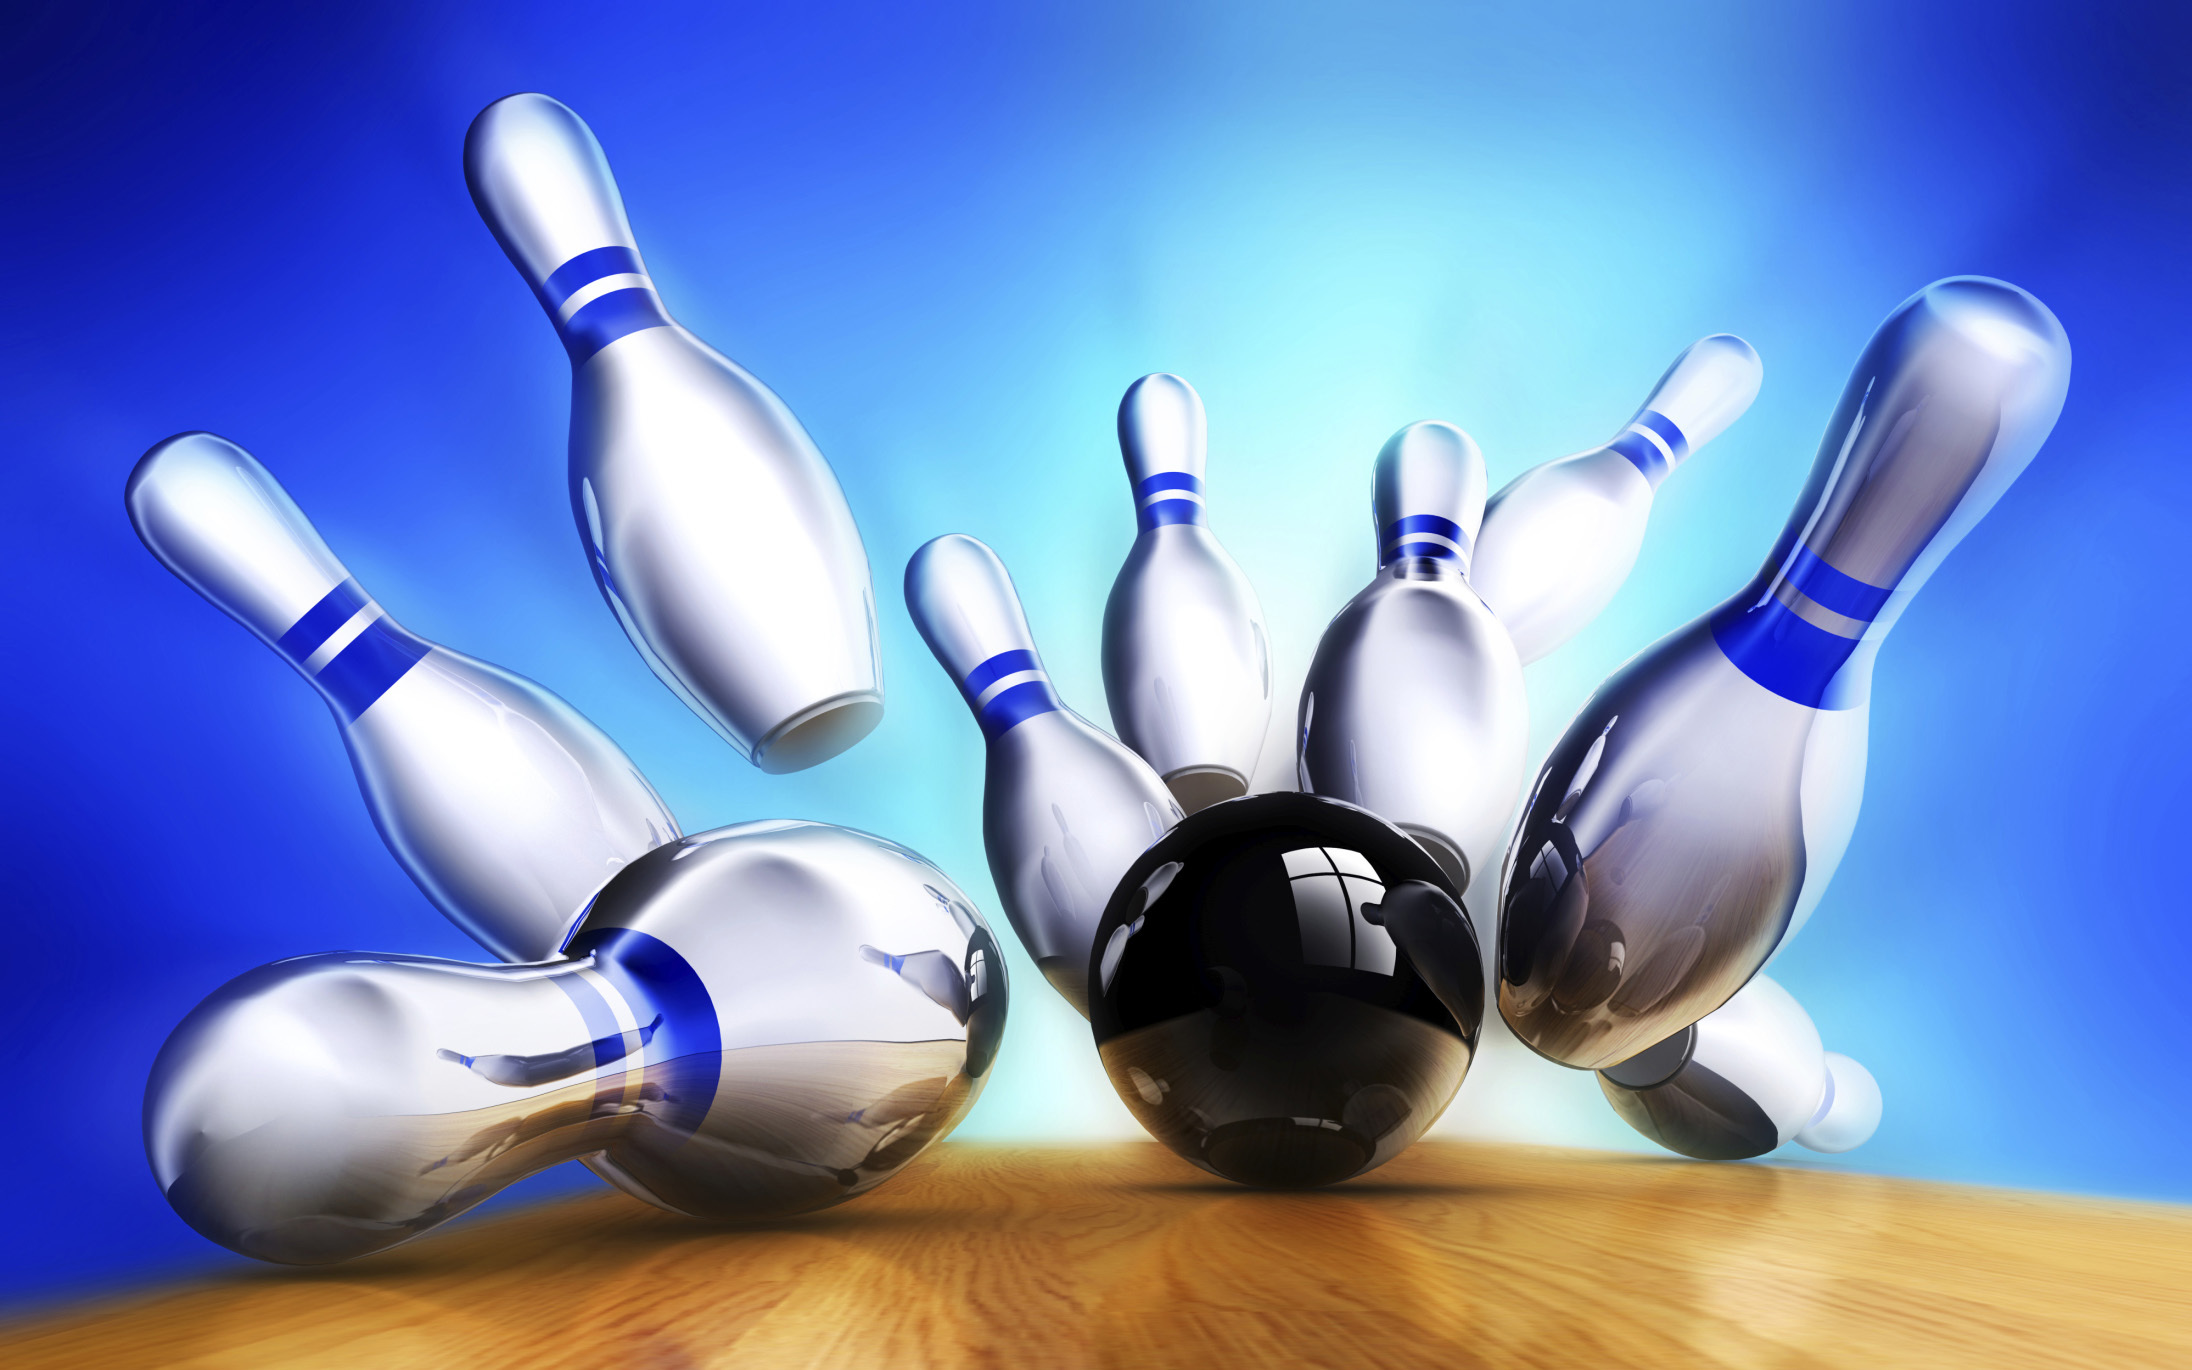 bowling tapete,bowling,bowling mit zehn kegeln,bowlingausrüstung,sportausrüstung,duckpin bowling